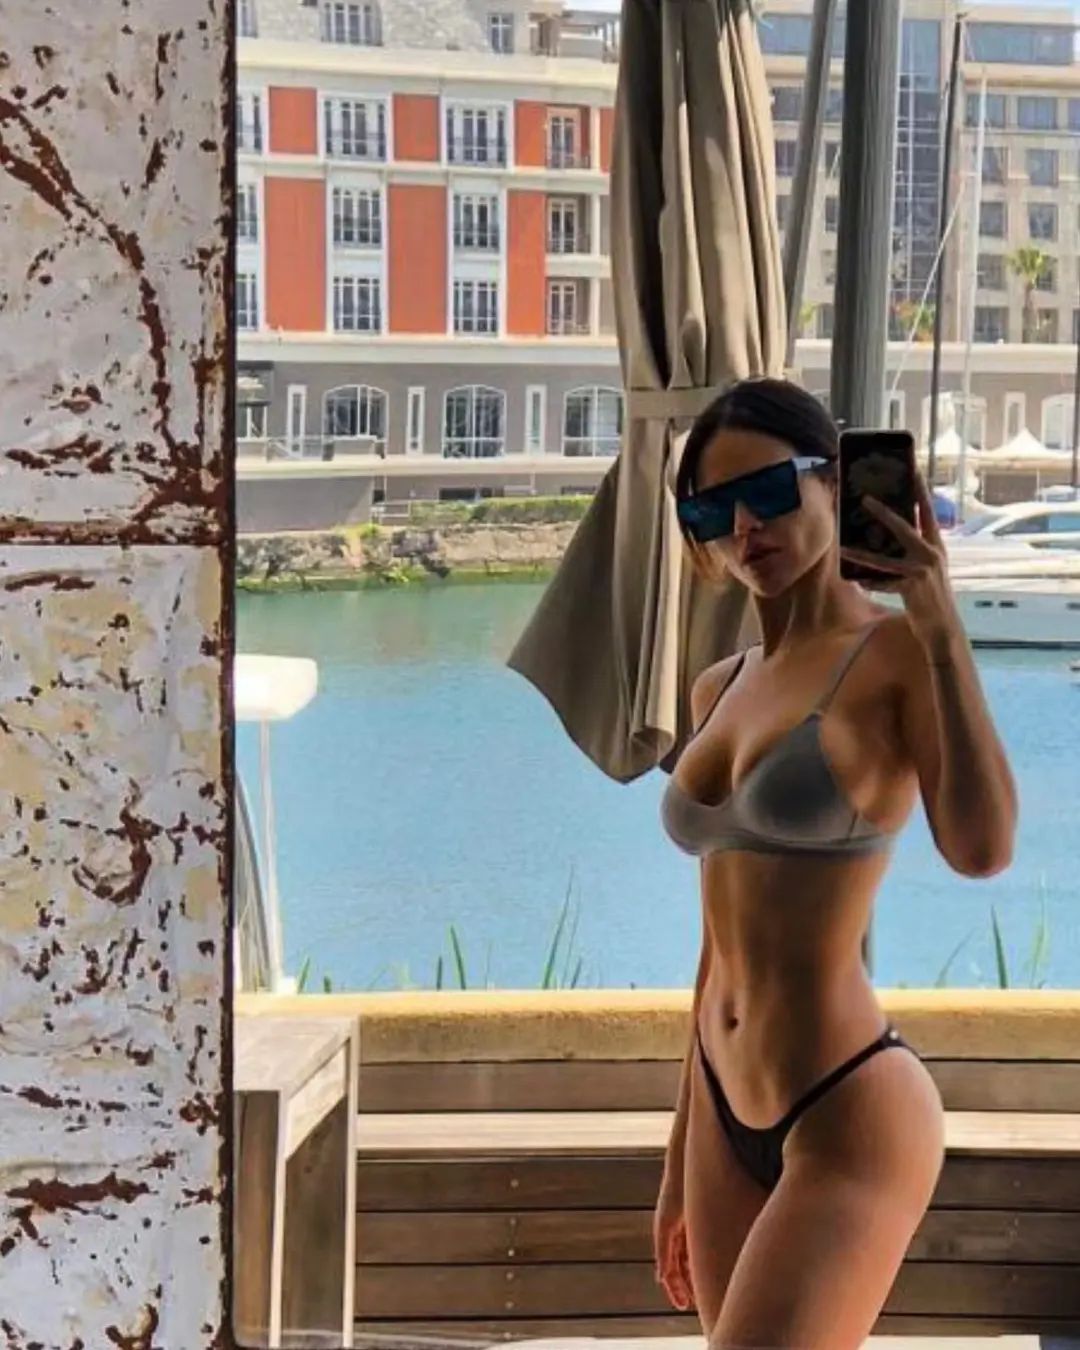 Eiza Gonzalez Shows Off Her Bikini Body in New Selfie! - Photo 2